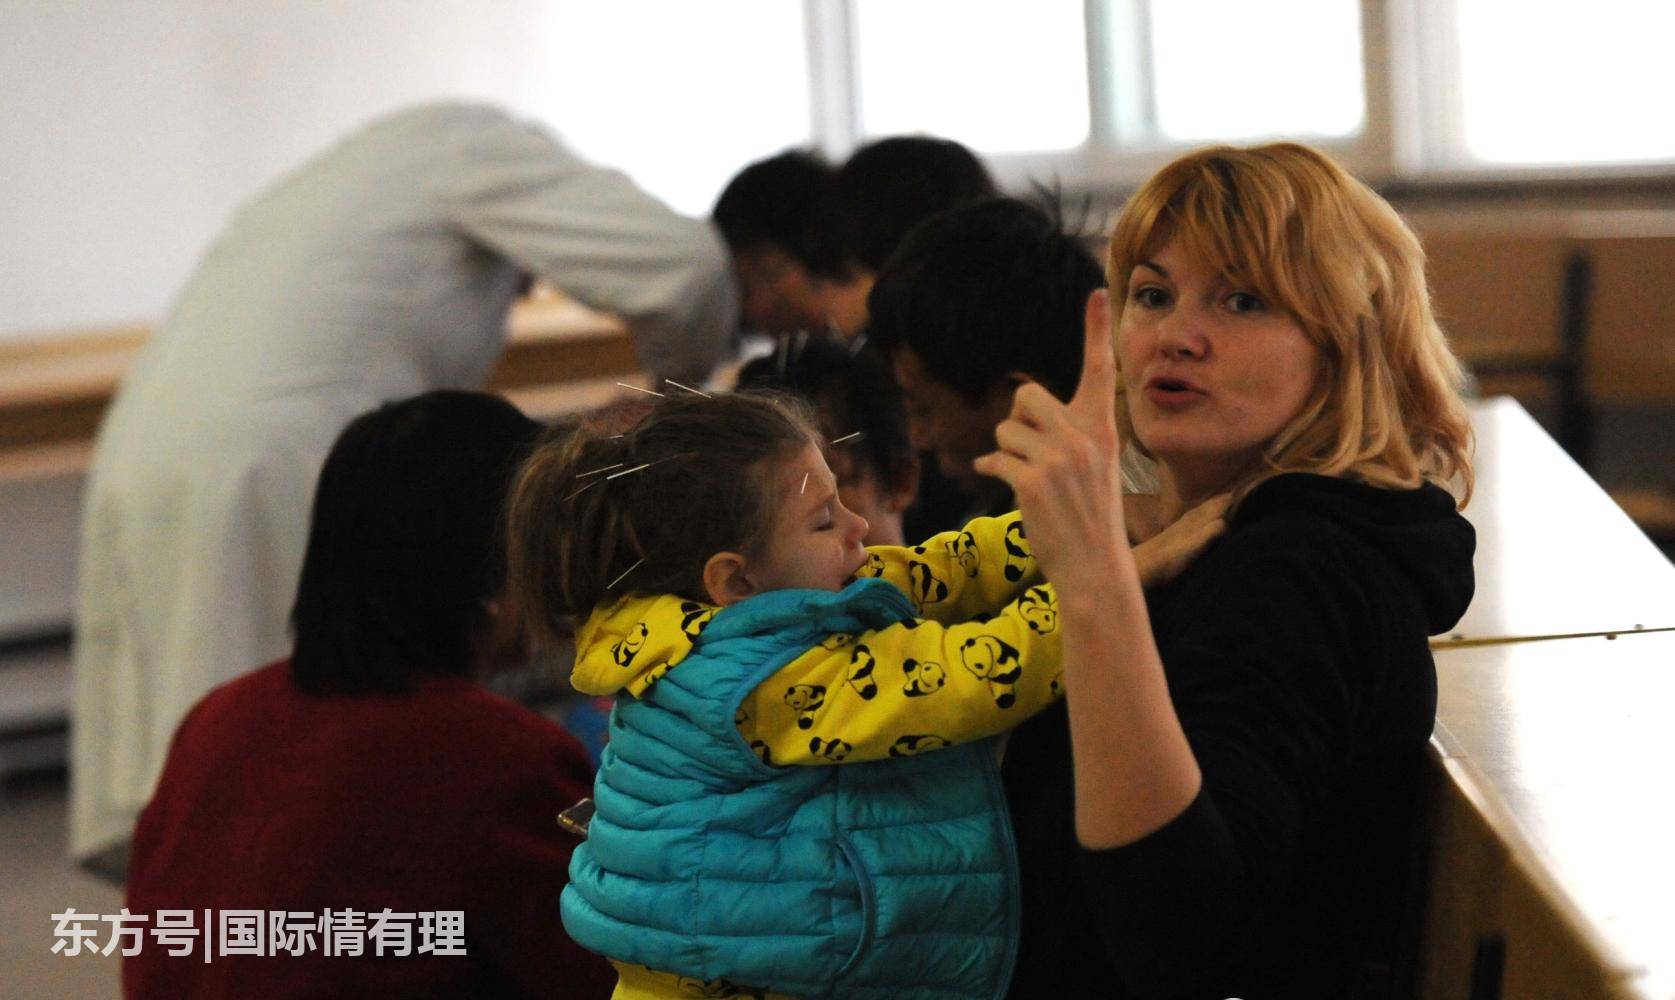 乌克兰妈妈四次带女儿来中国看病:这里的人都